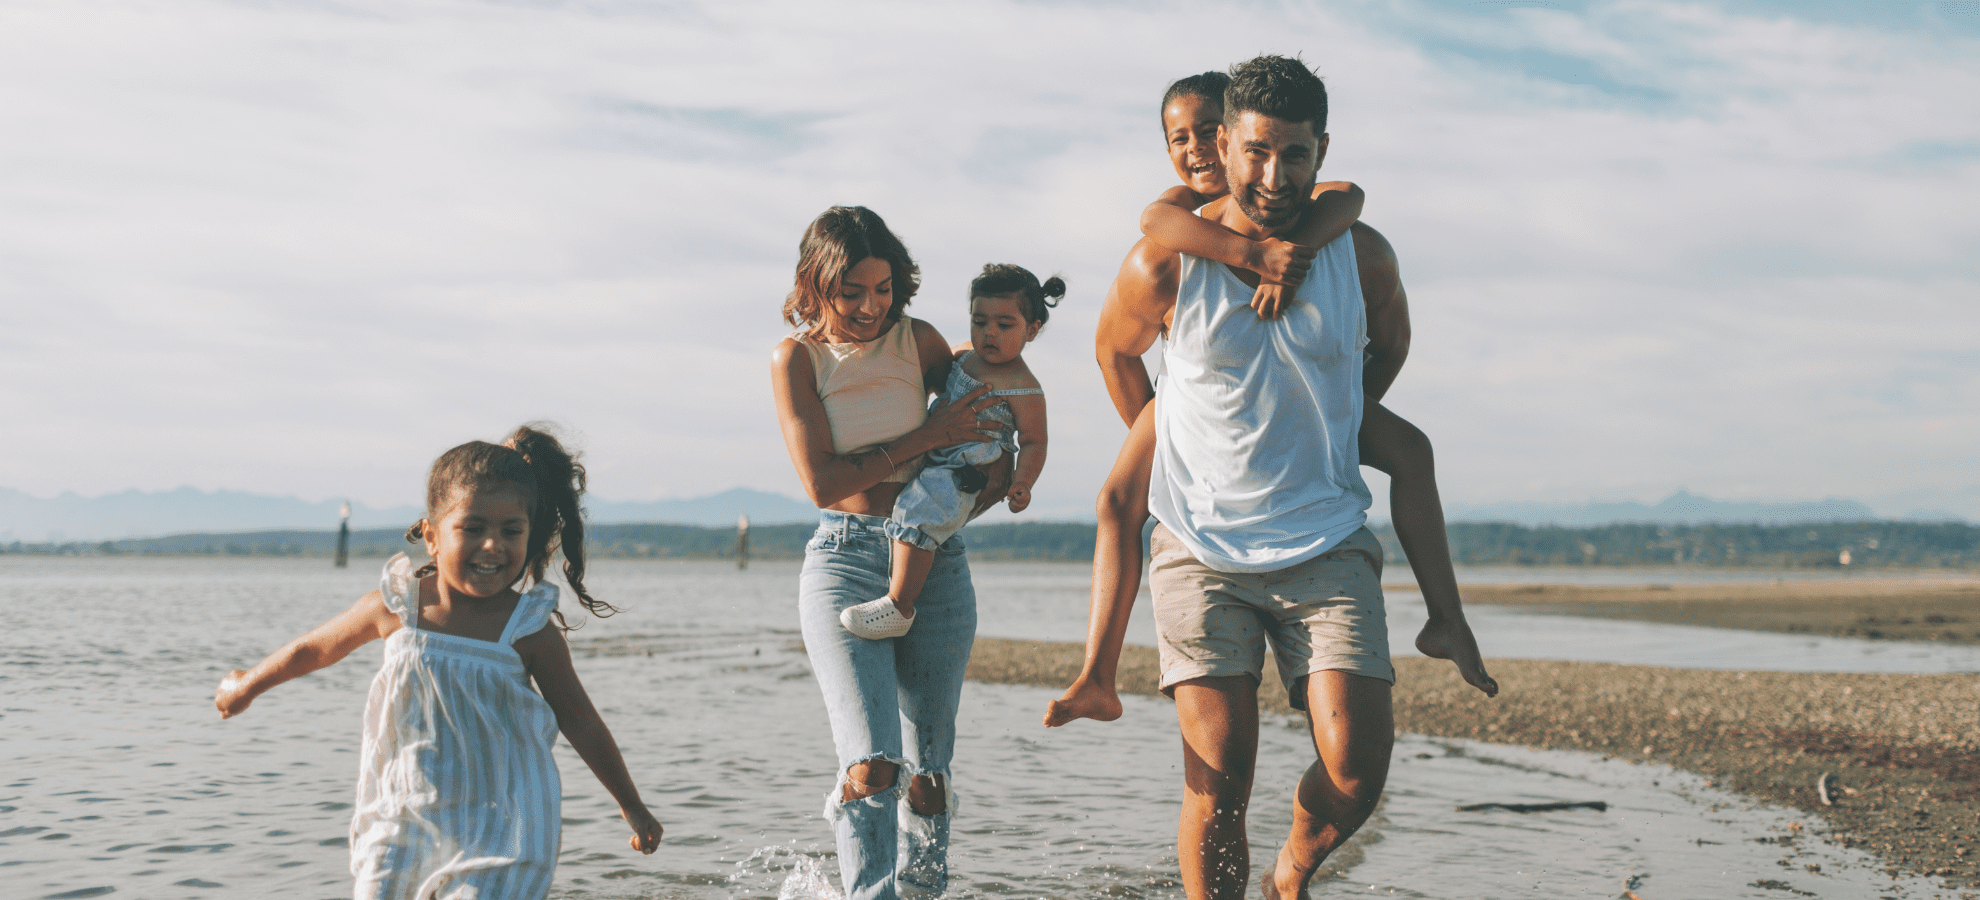 a family having fun at the beach